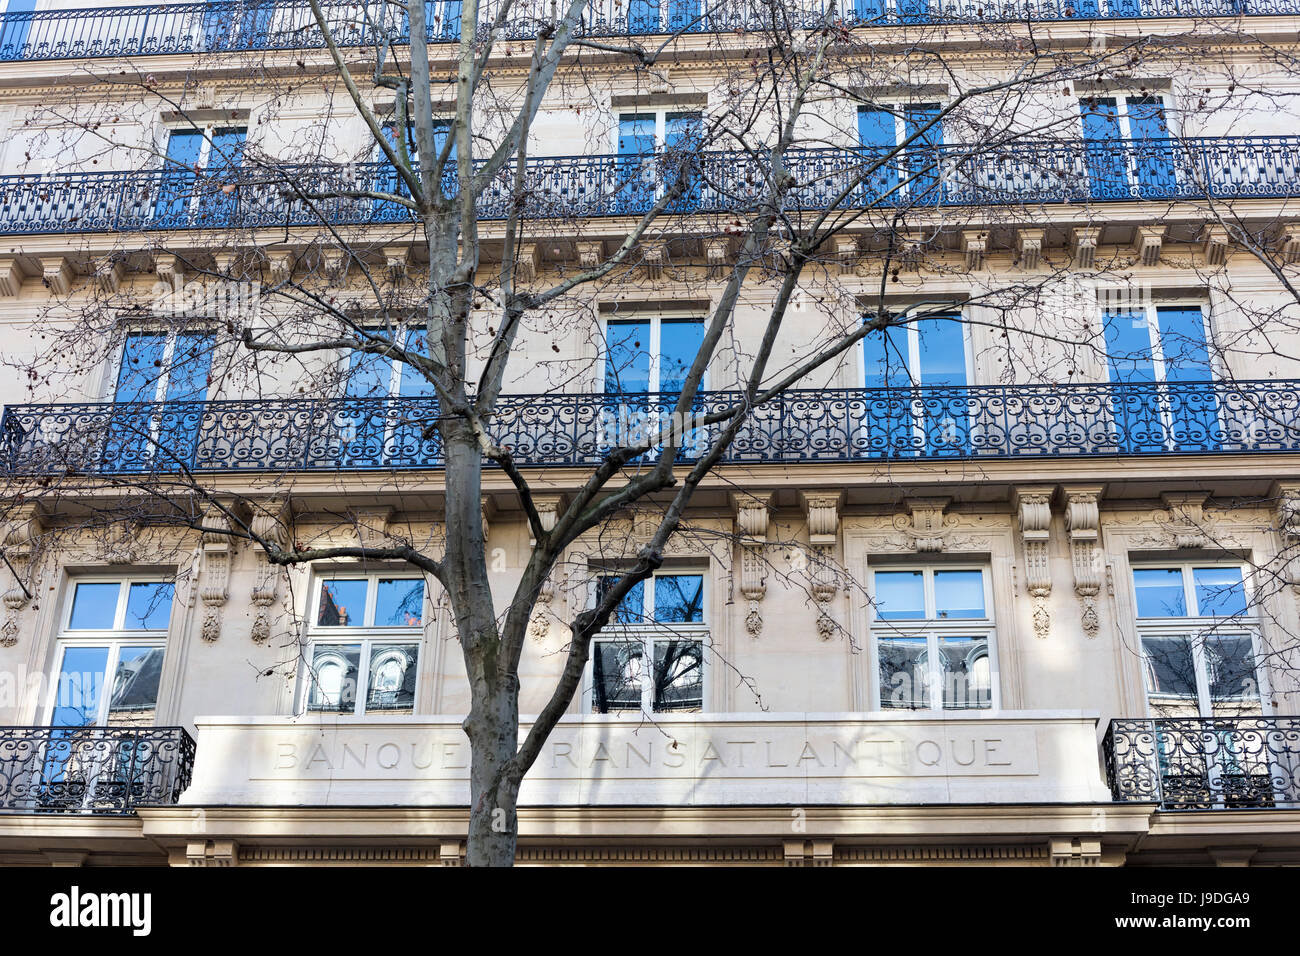 ehemaliger Sitz der Banque Transatlantique, jetzt Sitz des Danone, Boulevard Haussmann, Paris, Frankreich Stockfoto